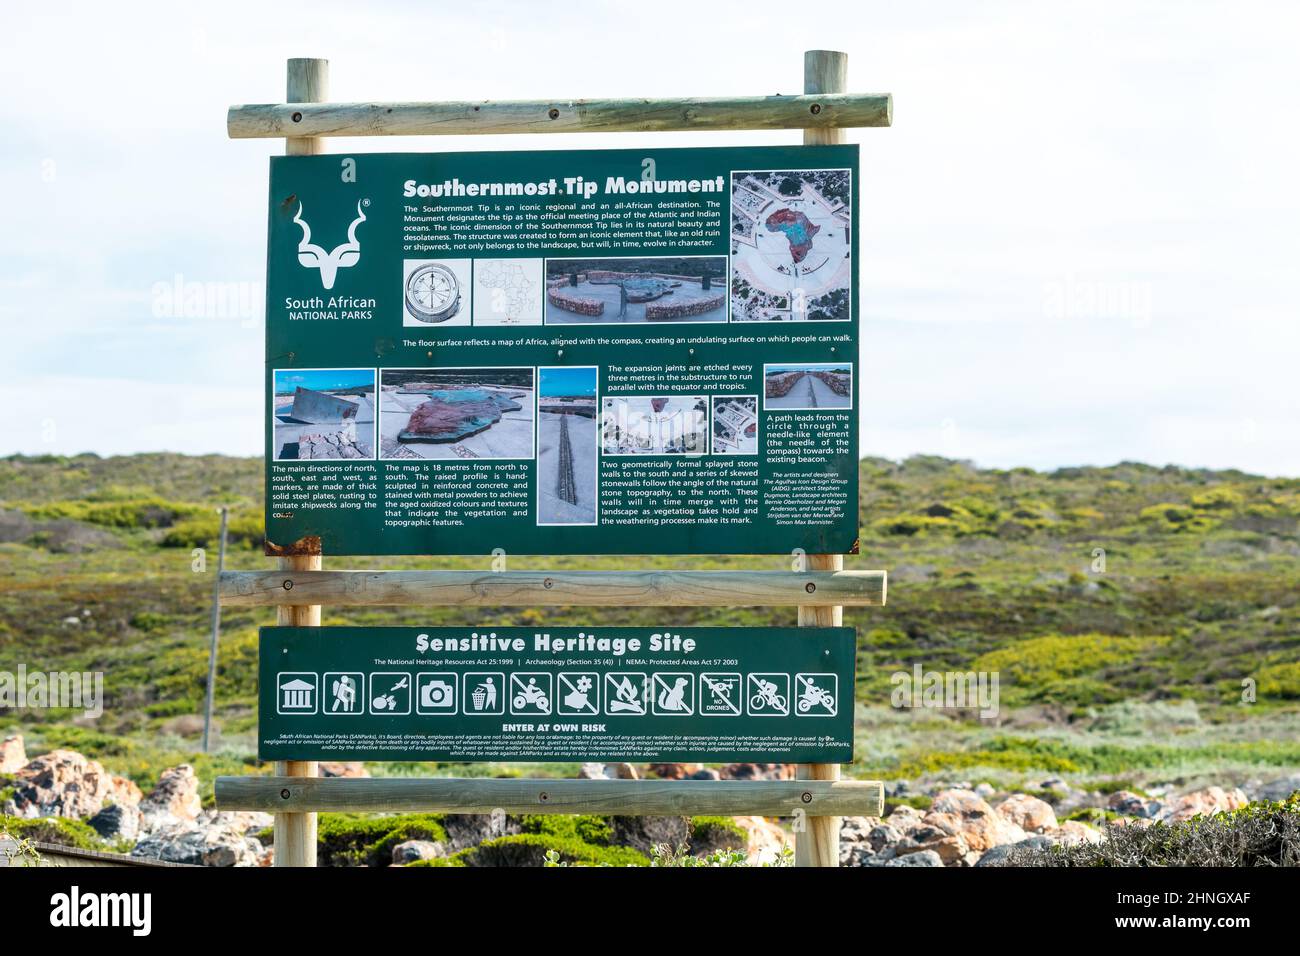 Pädagogische Informationstafel für den Tourismus am Cape Agulhas, Western Cape, Südafrika Konzept Reise zur südlichsten Spitze von Afrika Stockfoto